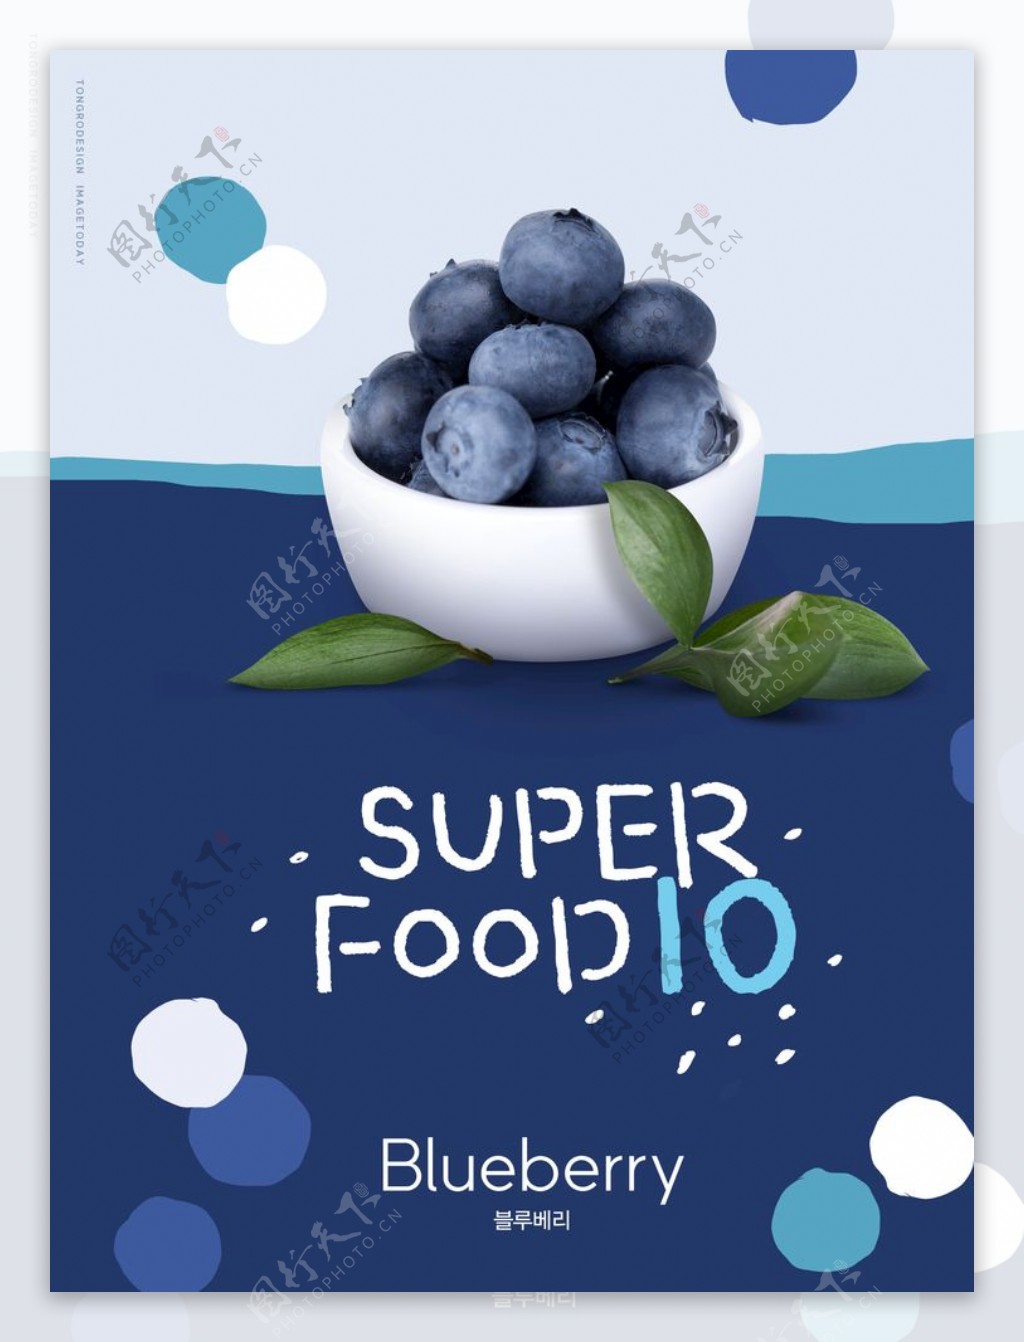 蓝莓海报韩国超市生鲜蔬果广告图片